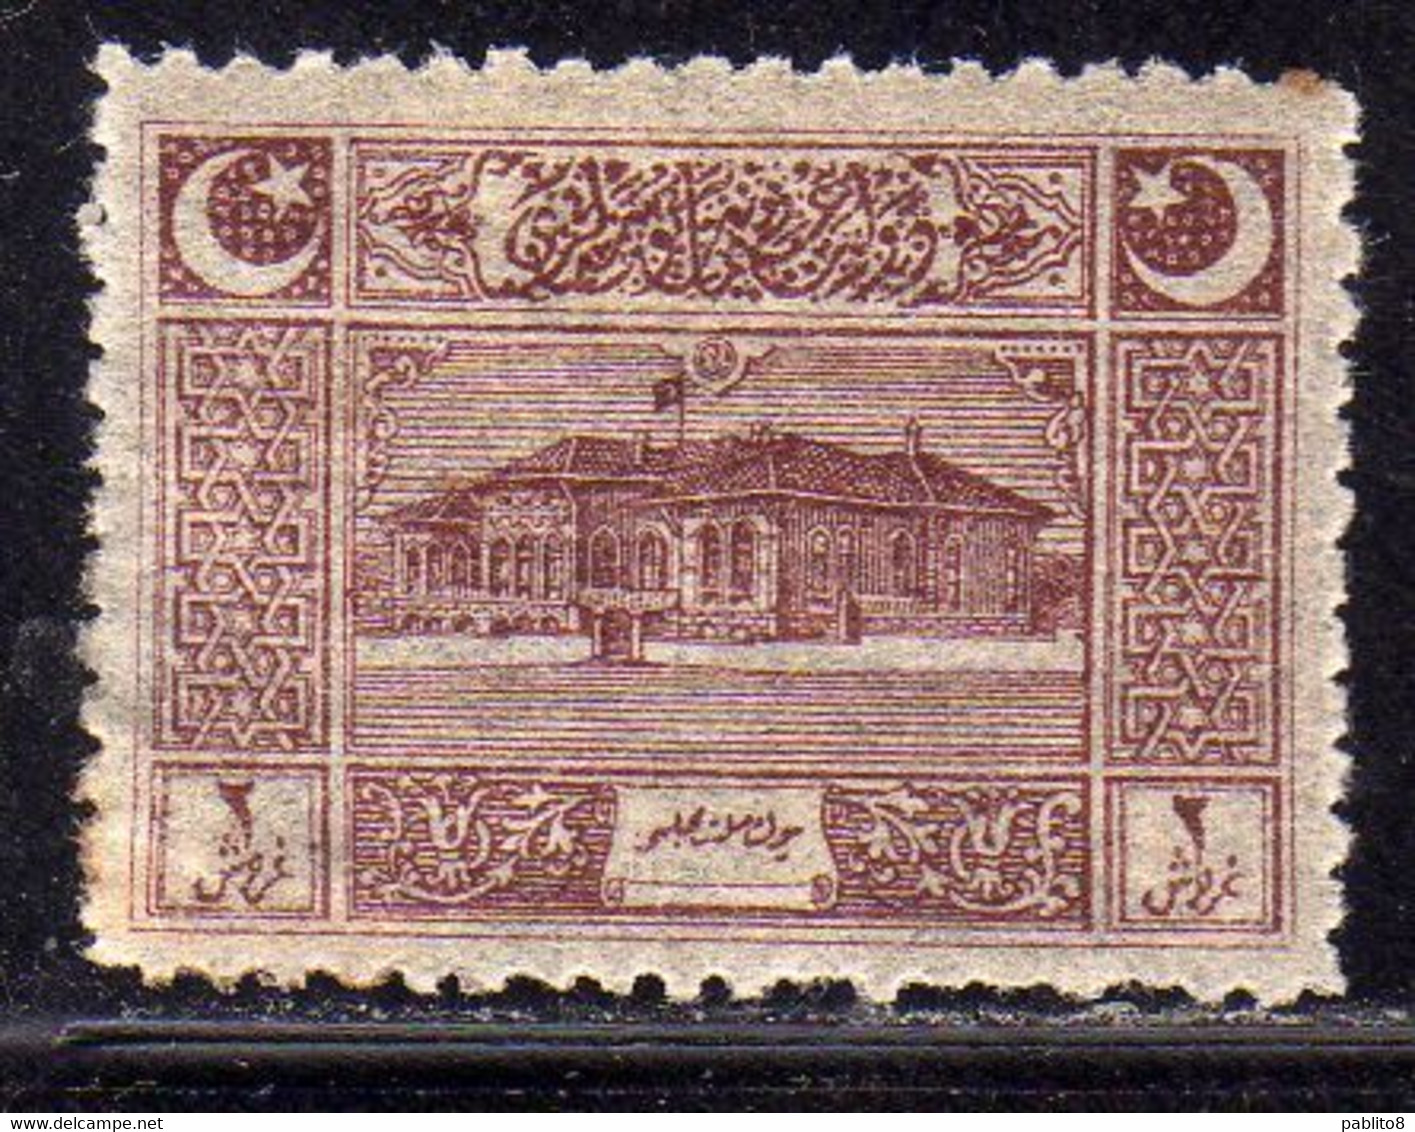 TURCHIA IN ASIA TURKÍA TURKEY ANATOLIA 1922 FIRST PARLIAMENT HOUSE ANKARA 2pi MH - 1920-21 Kleinasien